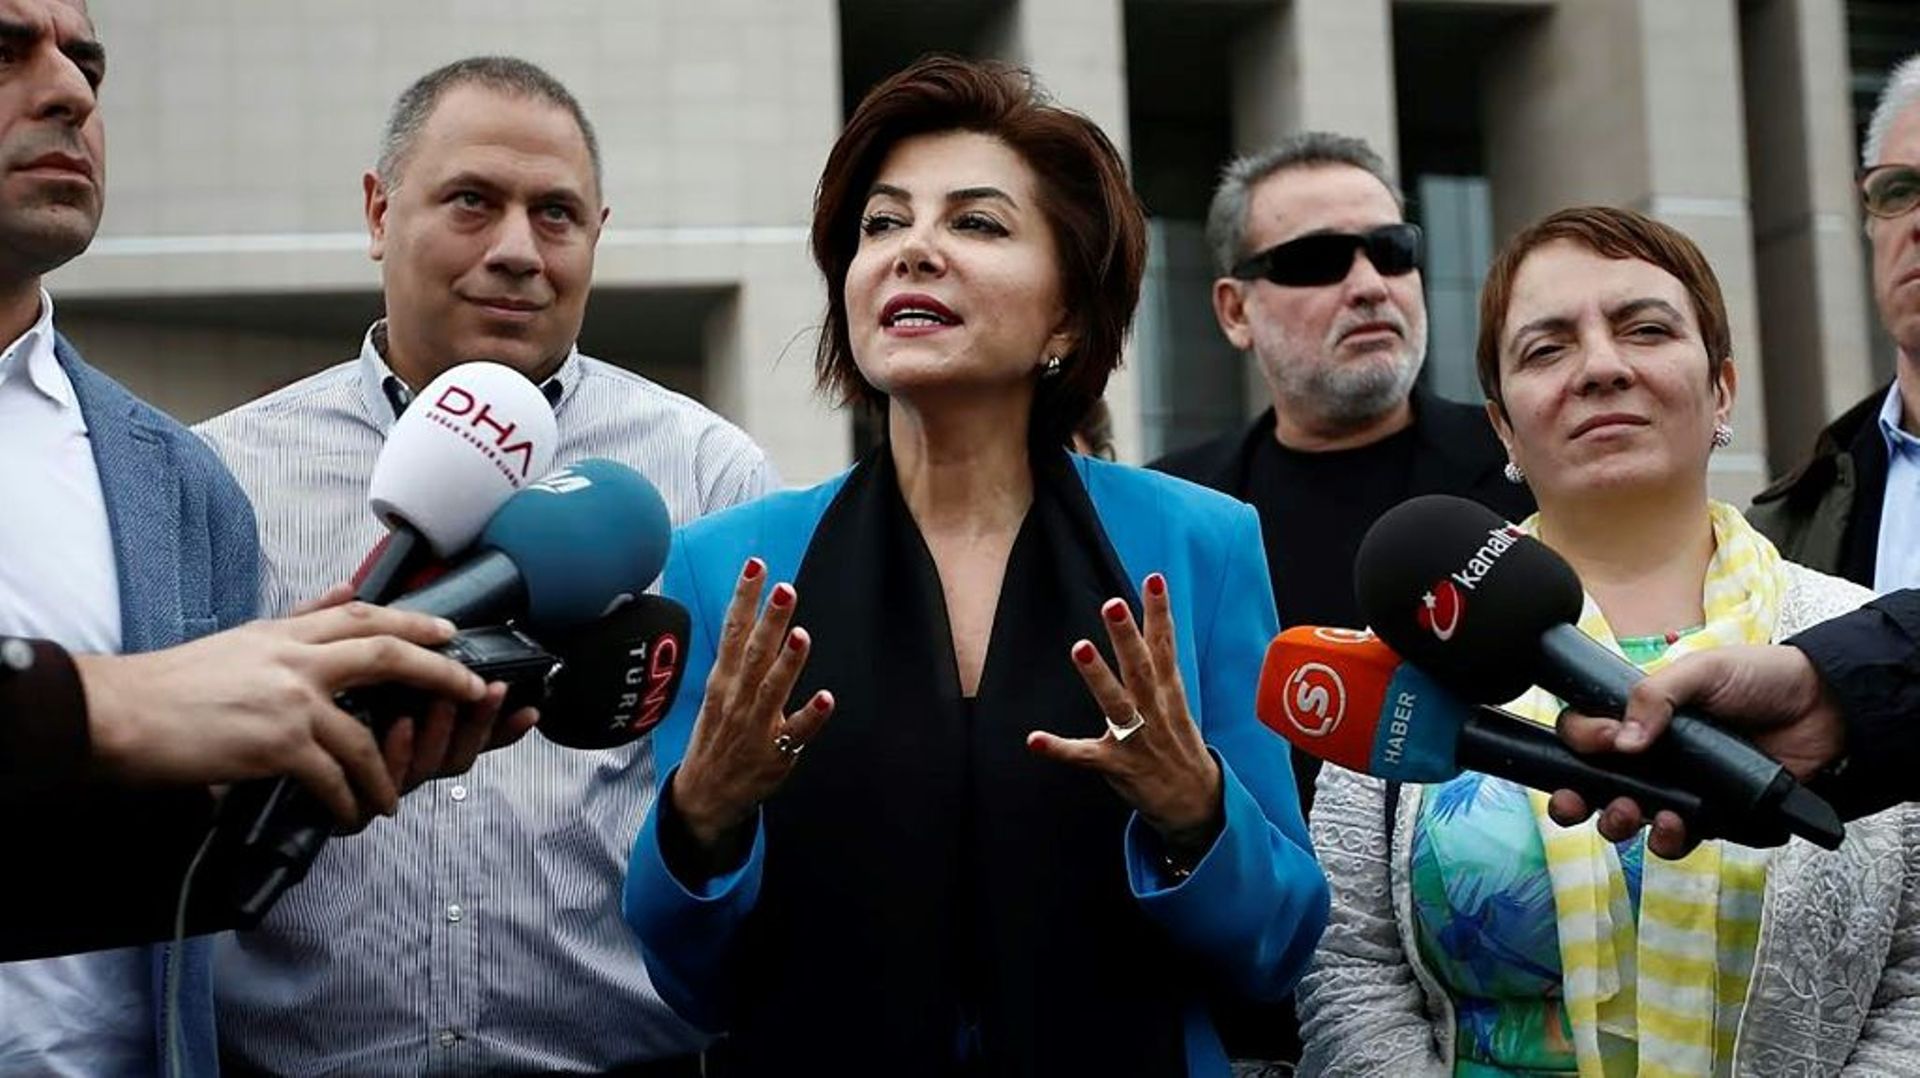 La journaliste turque Sedef Kabas s'exprime devant des journalistes à l'issue de son procès,  le 6 octobre 2015 à Istanbul  